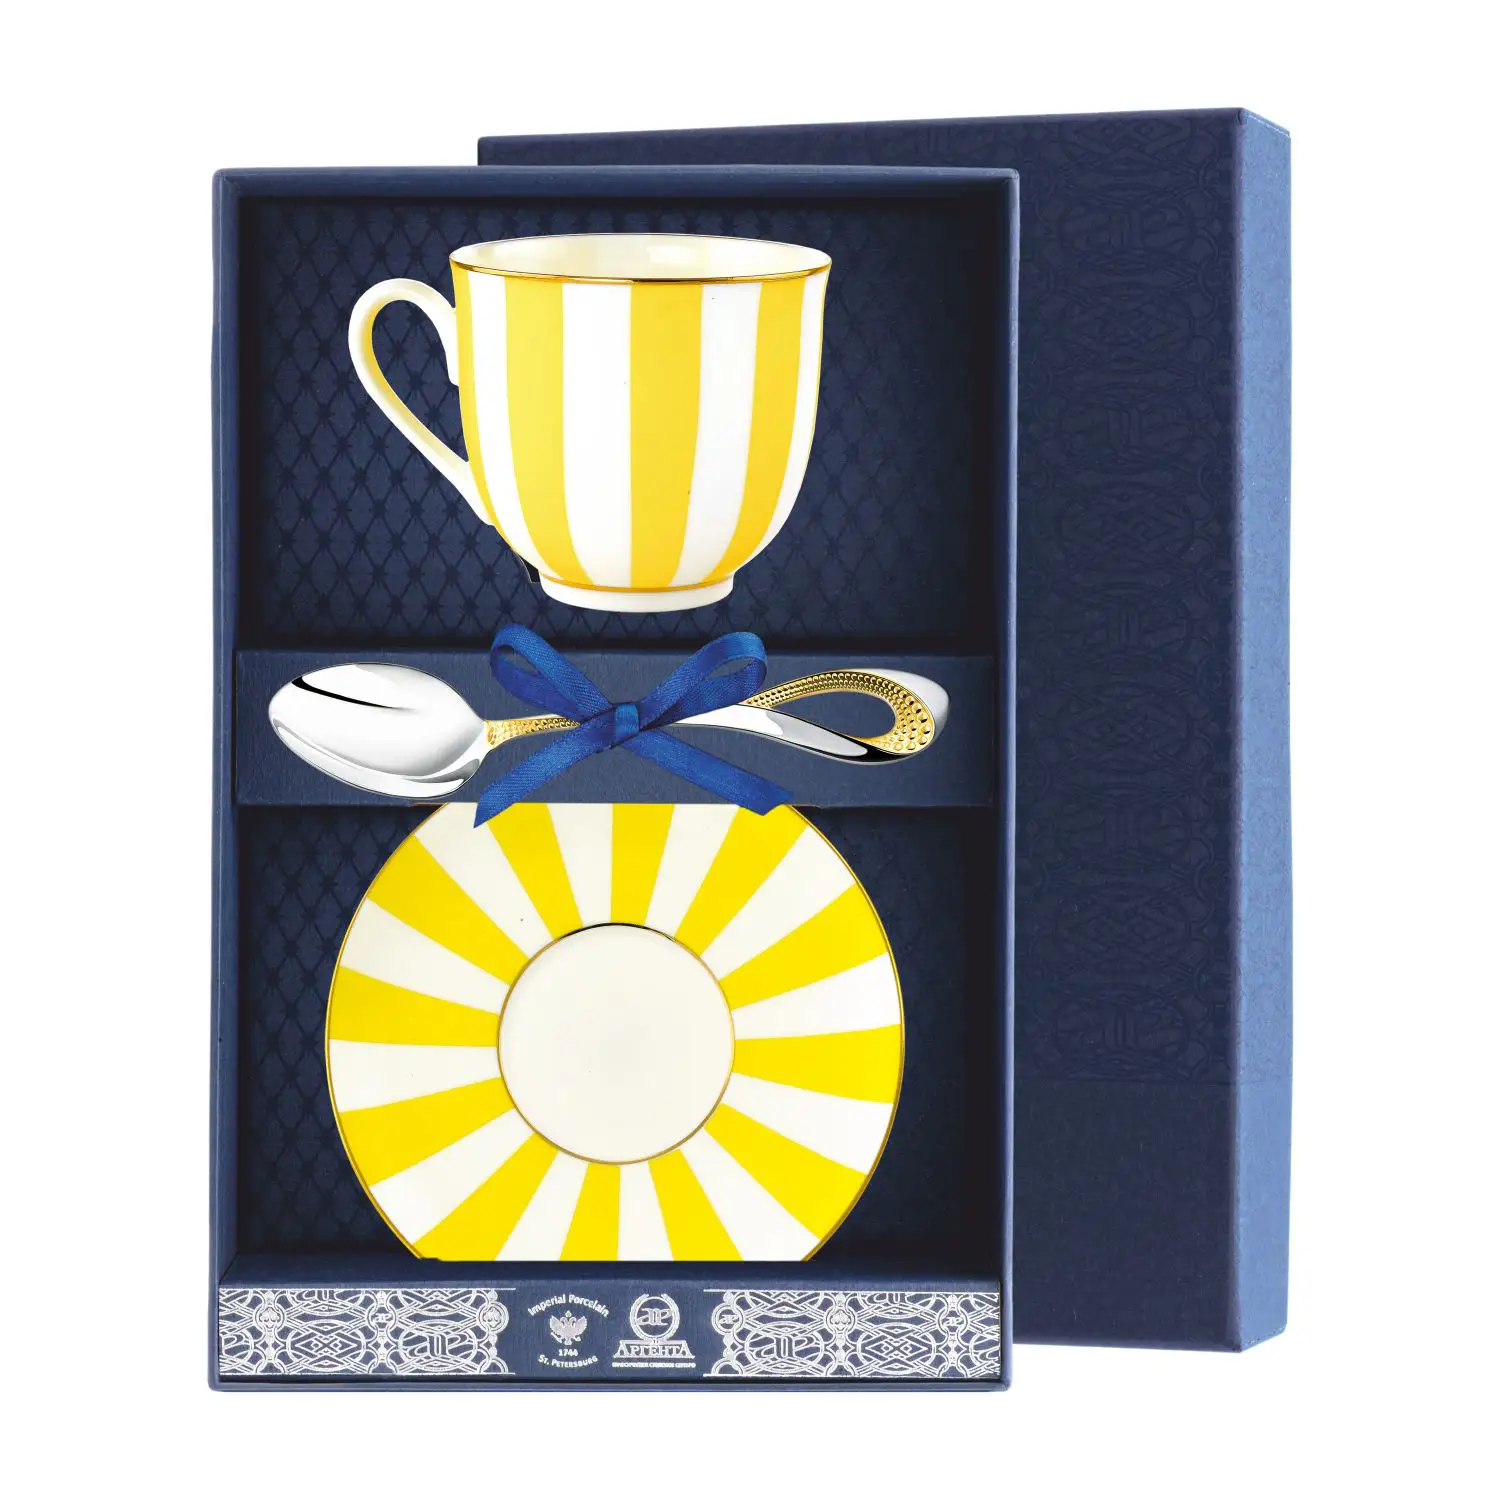 Набор чайный Ландыш - Да и Нет: блюдце, ложка, чашка (Серебро 925) набор чайный ландыш фигурное катание блюдце ложка чашка серебро 925